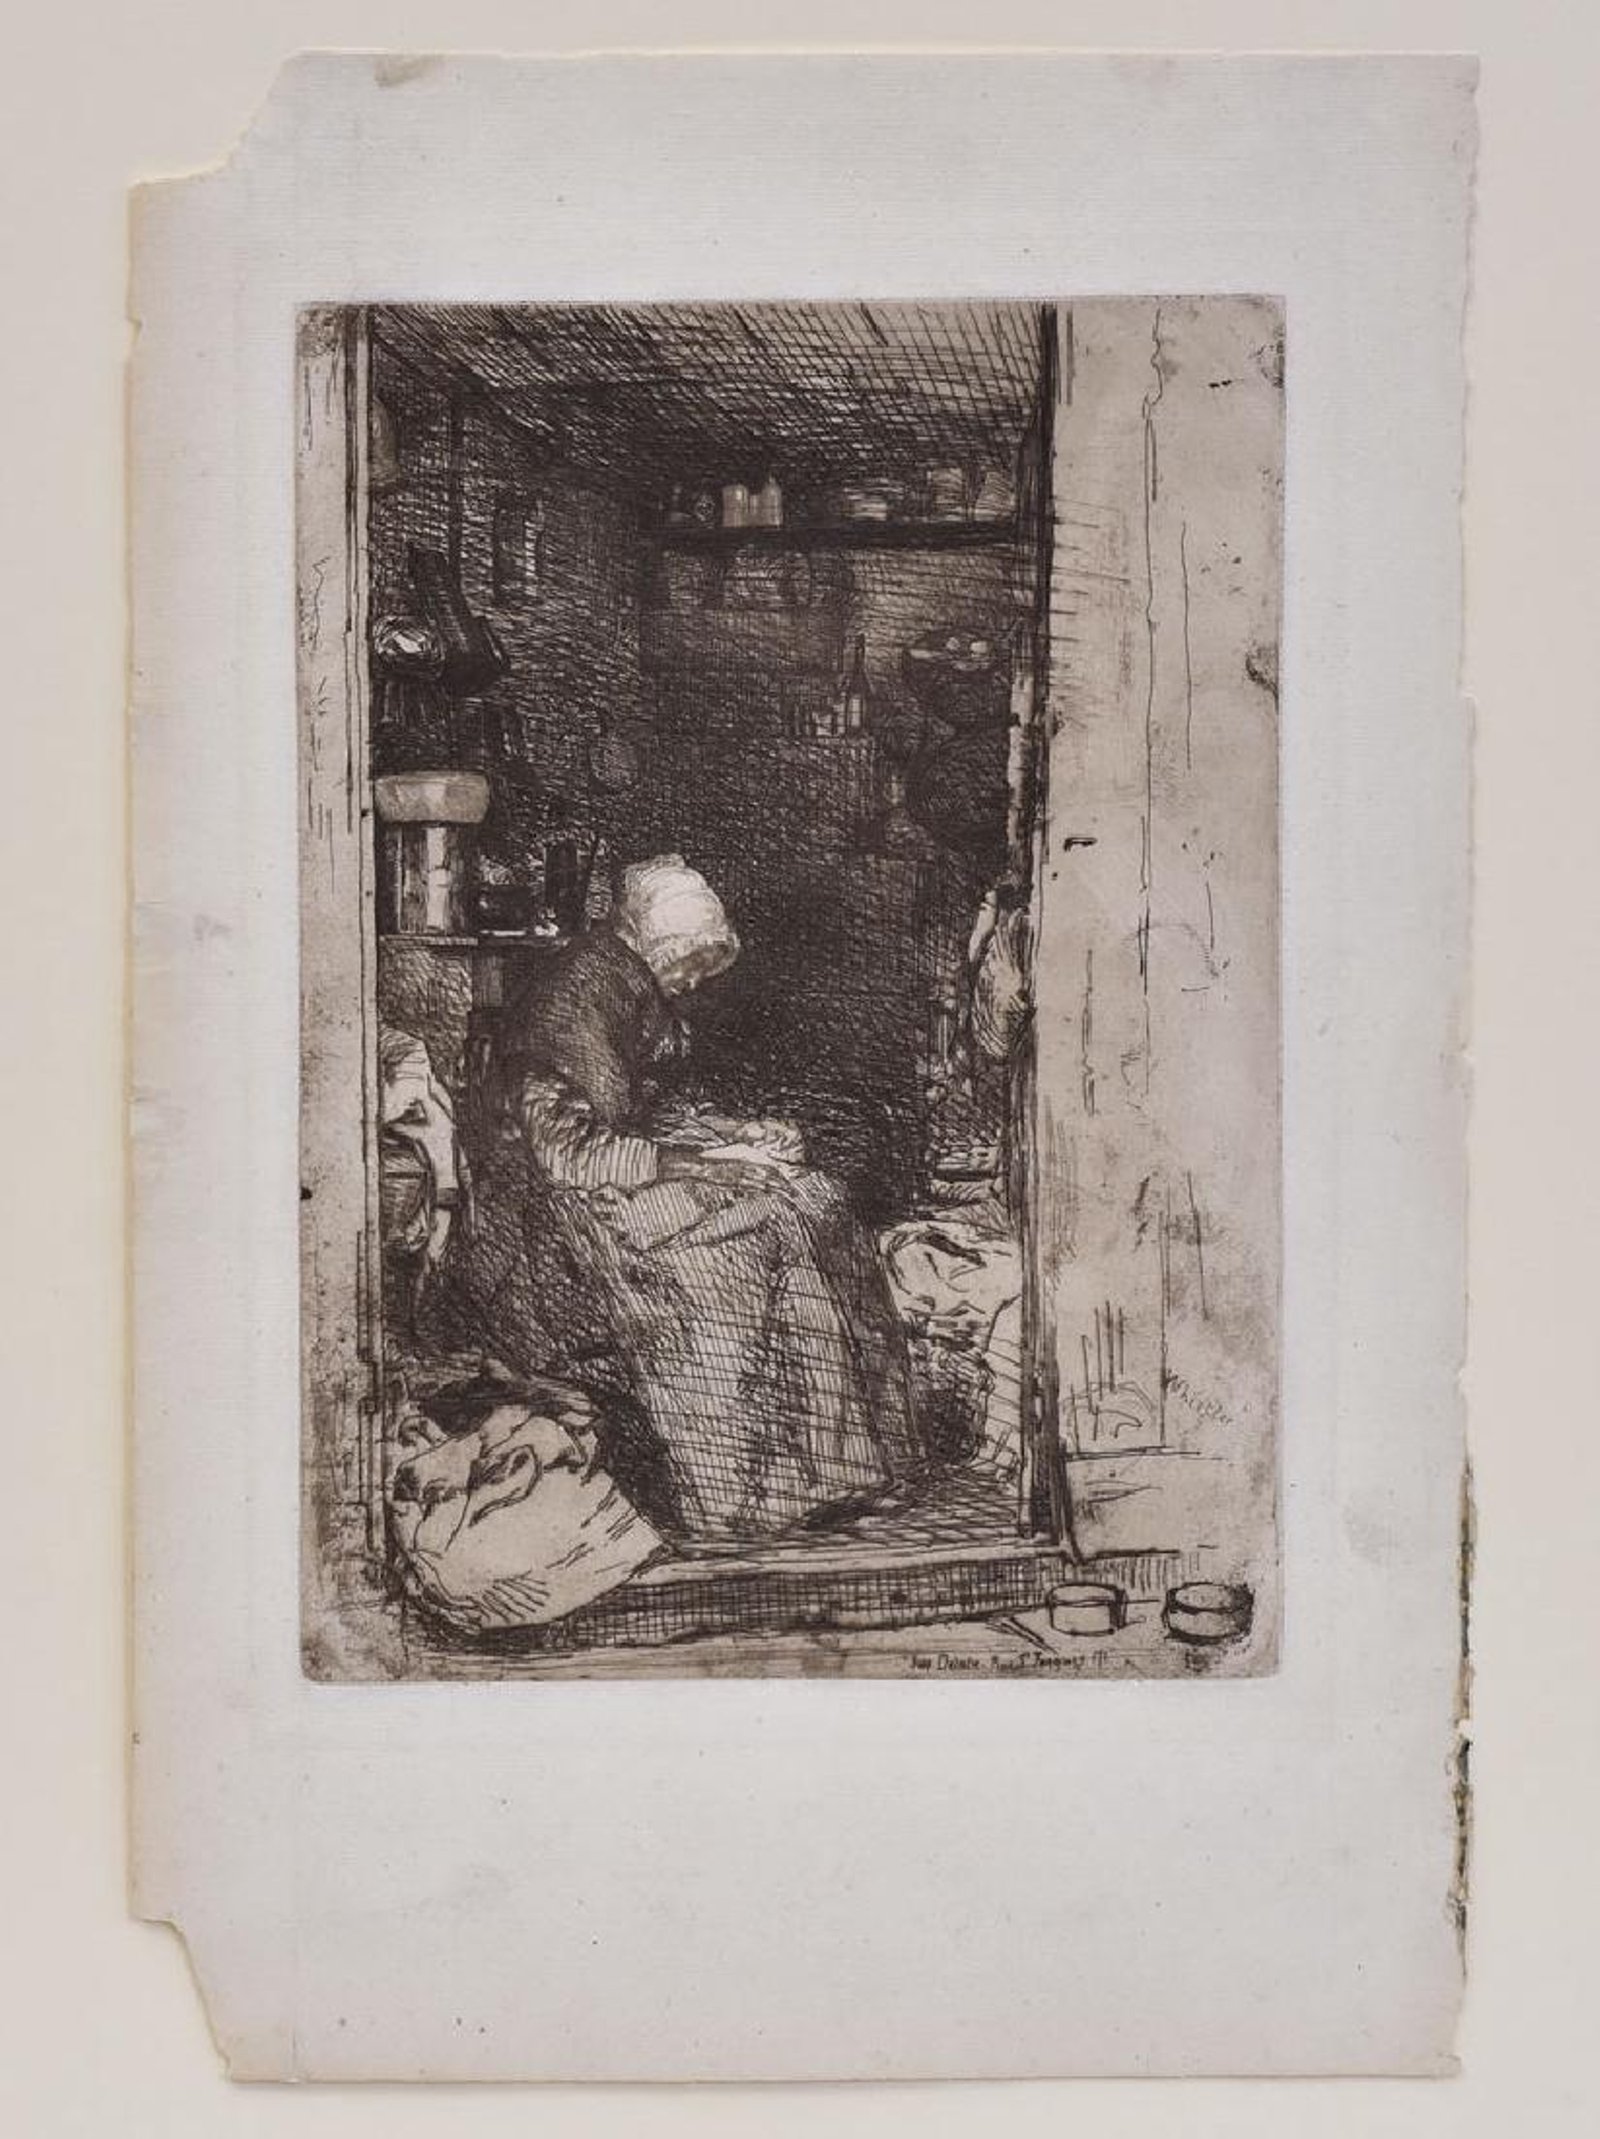 Whistler, La Vieille aux Loques, etching 1858